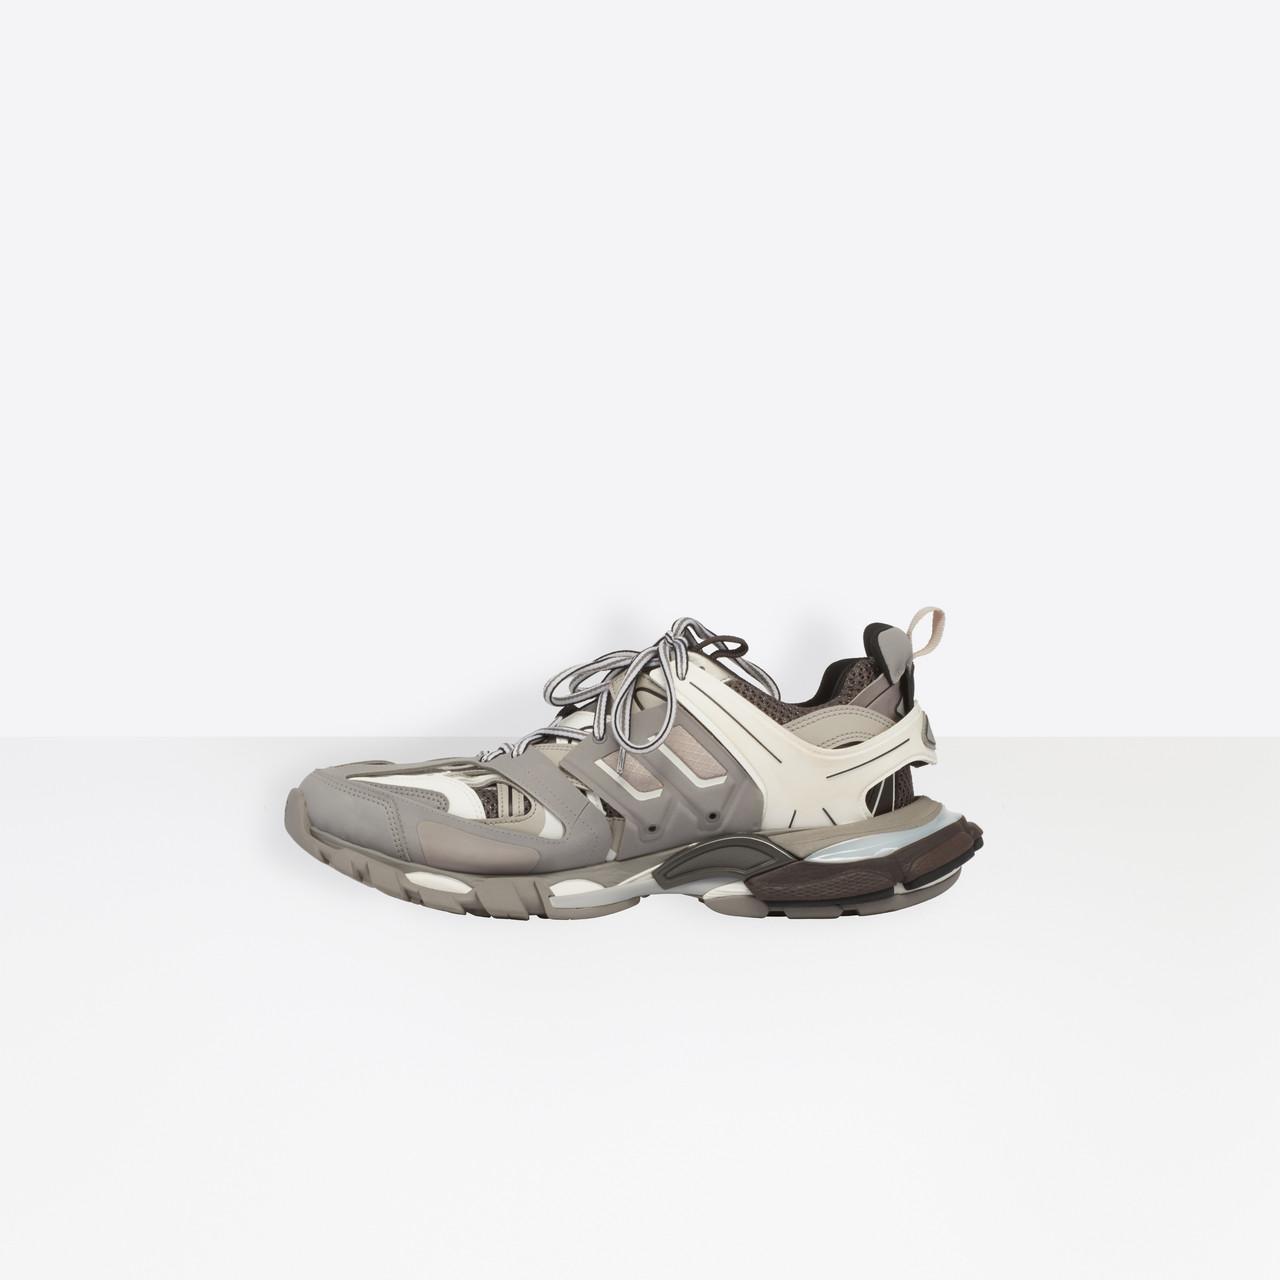 balenciaga track shoes grey